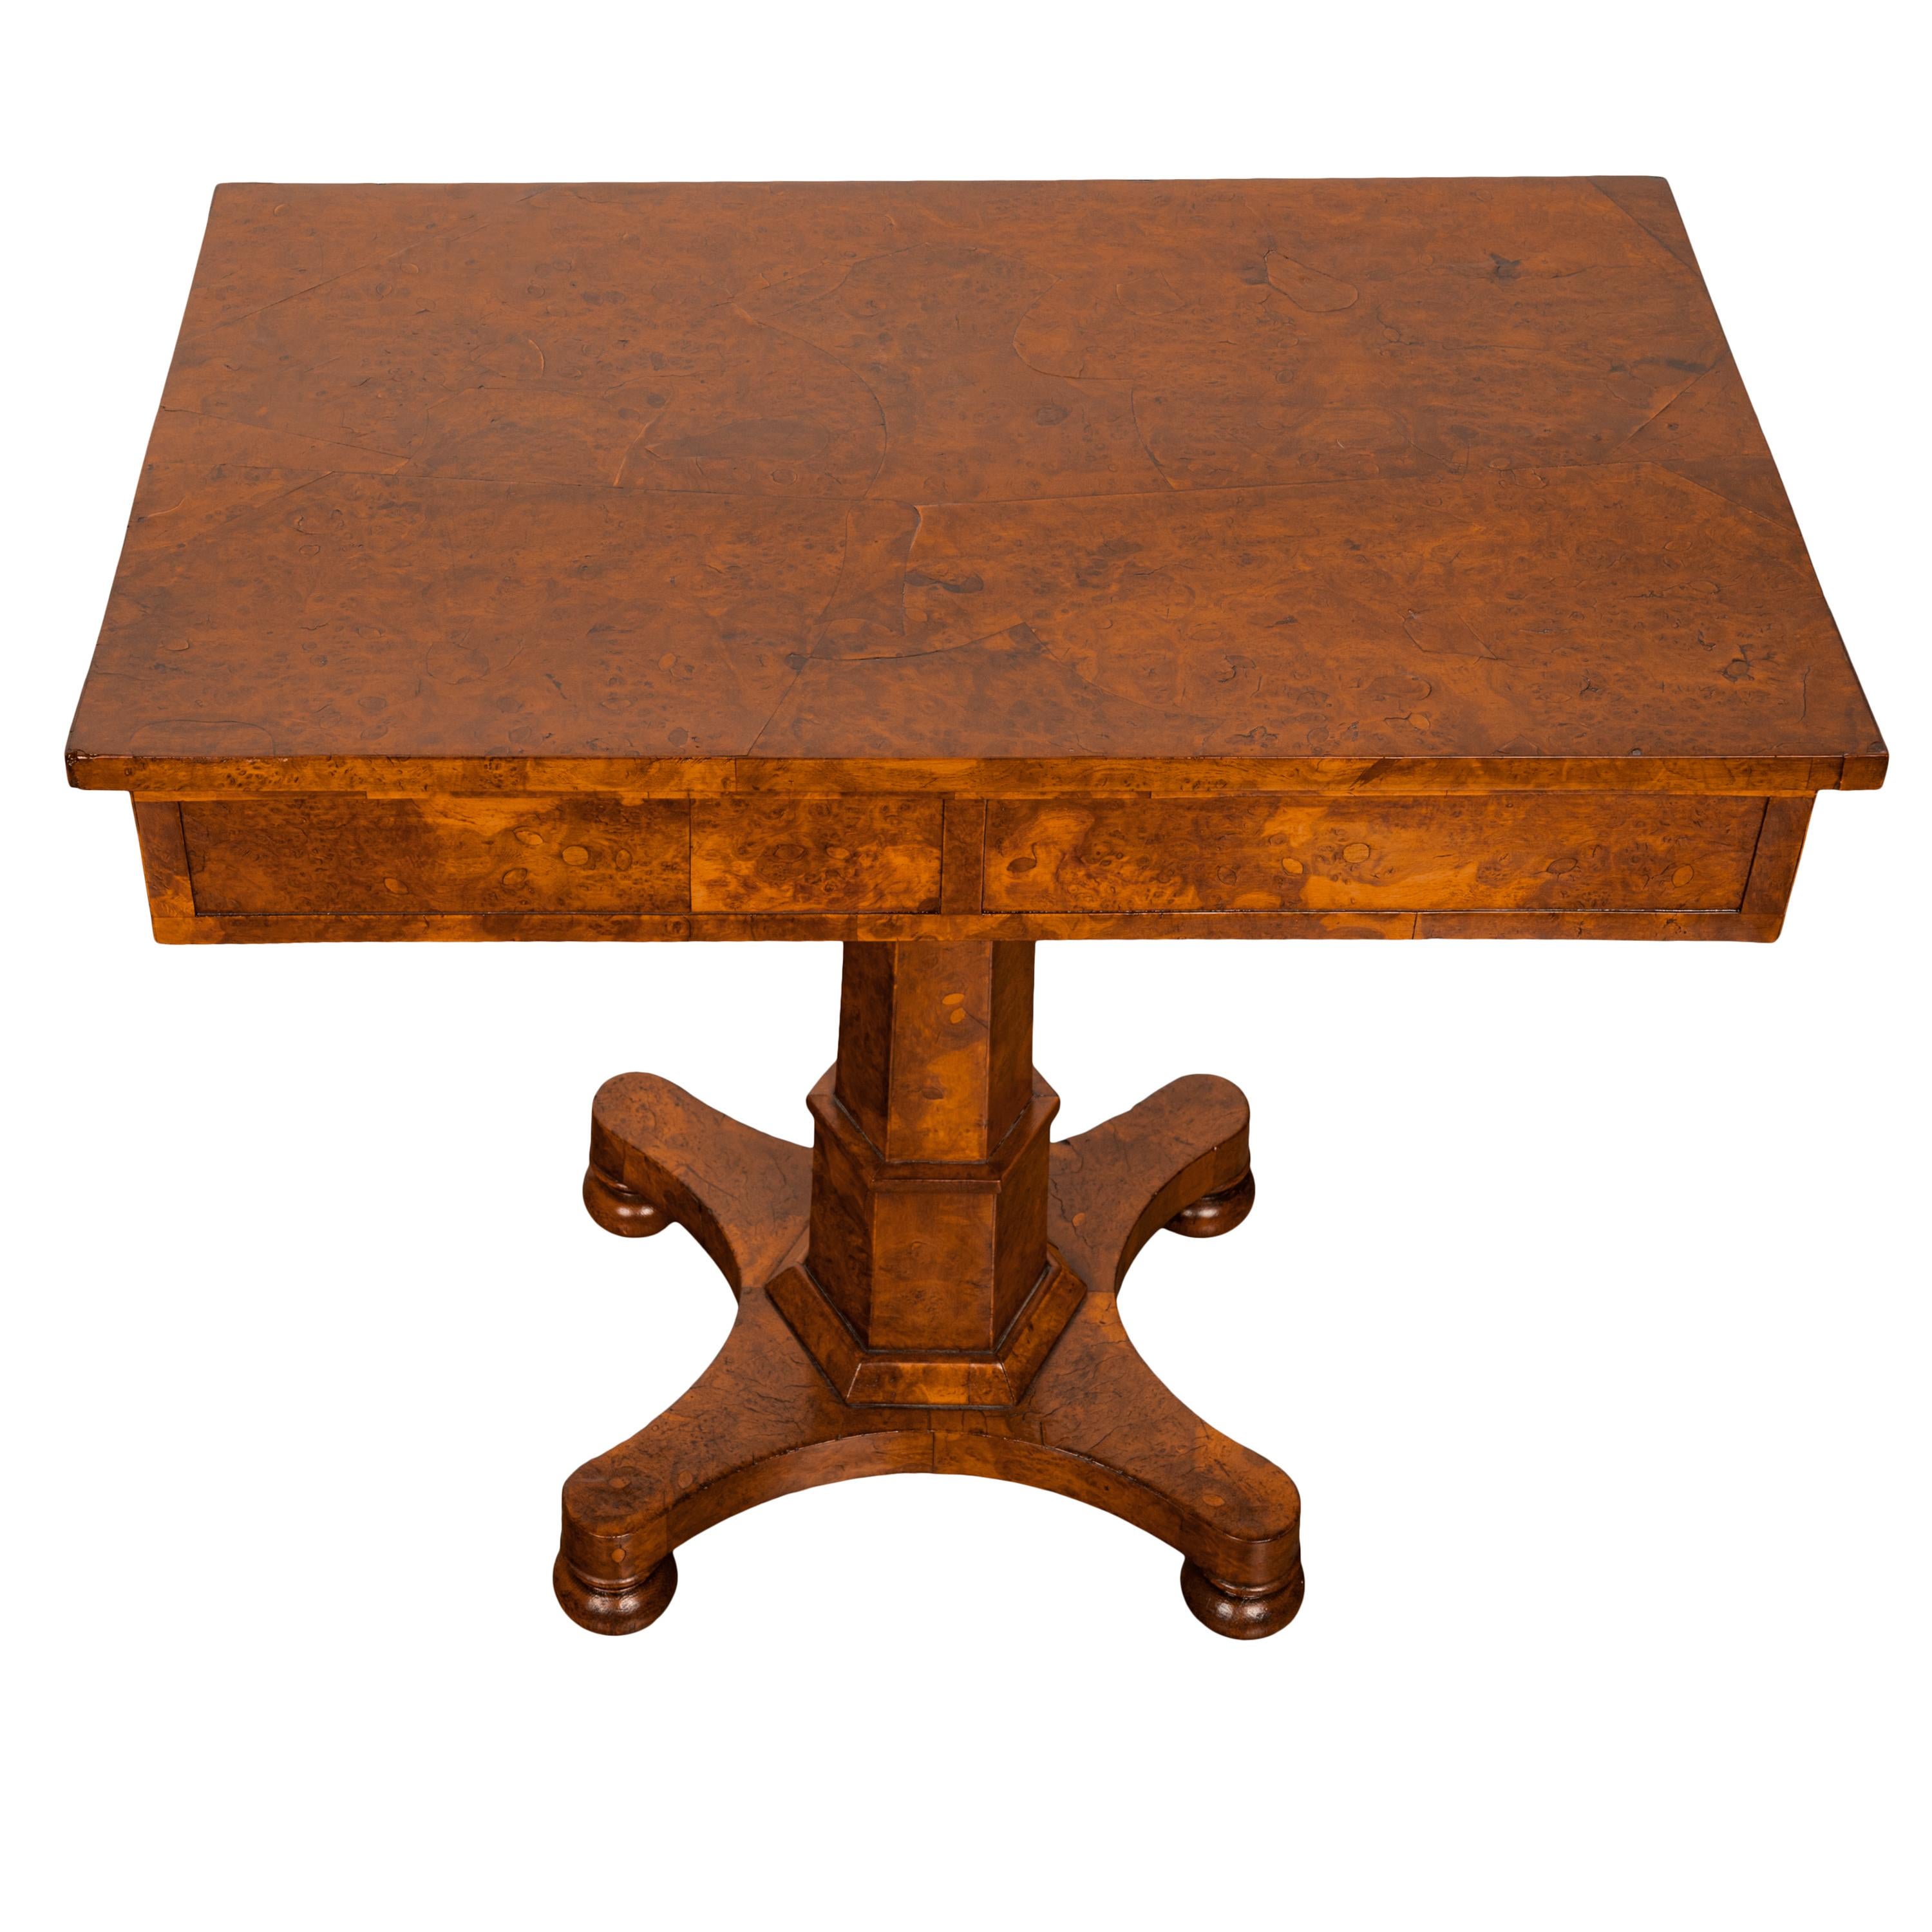 Ein sehr seltener antiker Beistelltisch aus Ulme mit Wurzelmaser aus der Zeit von George IV. um 1825.
Der Tisch ist aus der unglaublichsten Ulmenwurzel gefertigt, die hochgradig gemaserte rechteckige Tischplatte mit einer Schublade an jedem Ende und